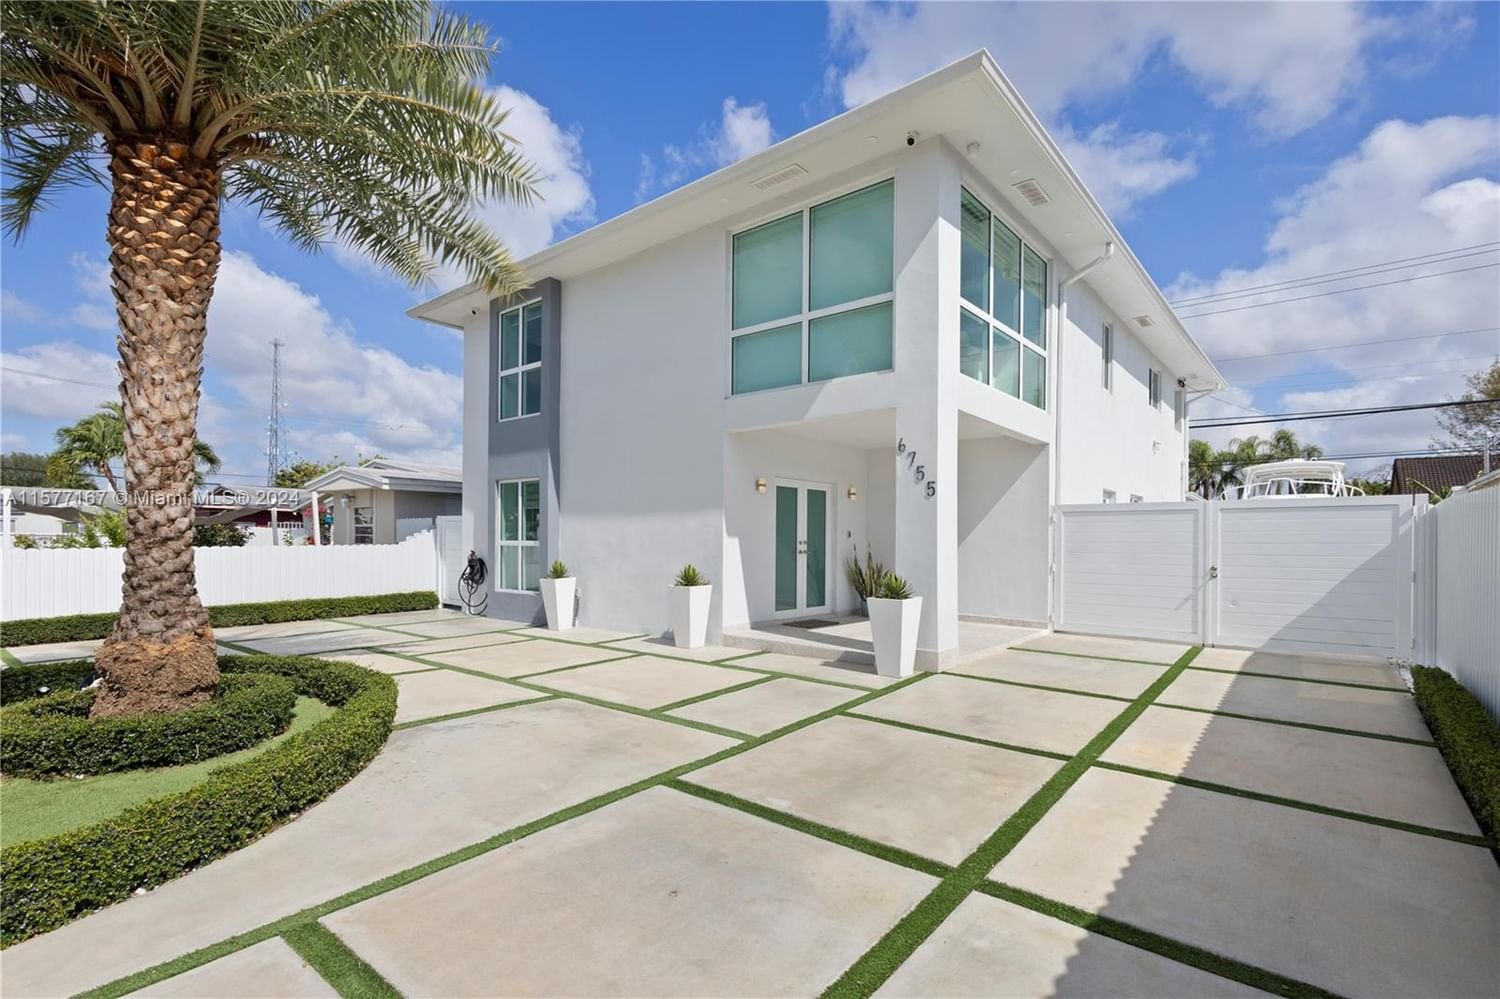 Real estate property located at 6755 39th Ter, Miami-Dade County, CENTRAL MIAMI PT 3, Miami, FL